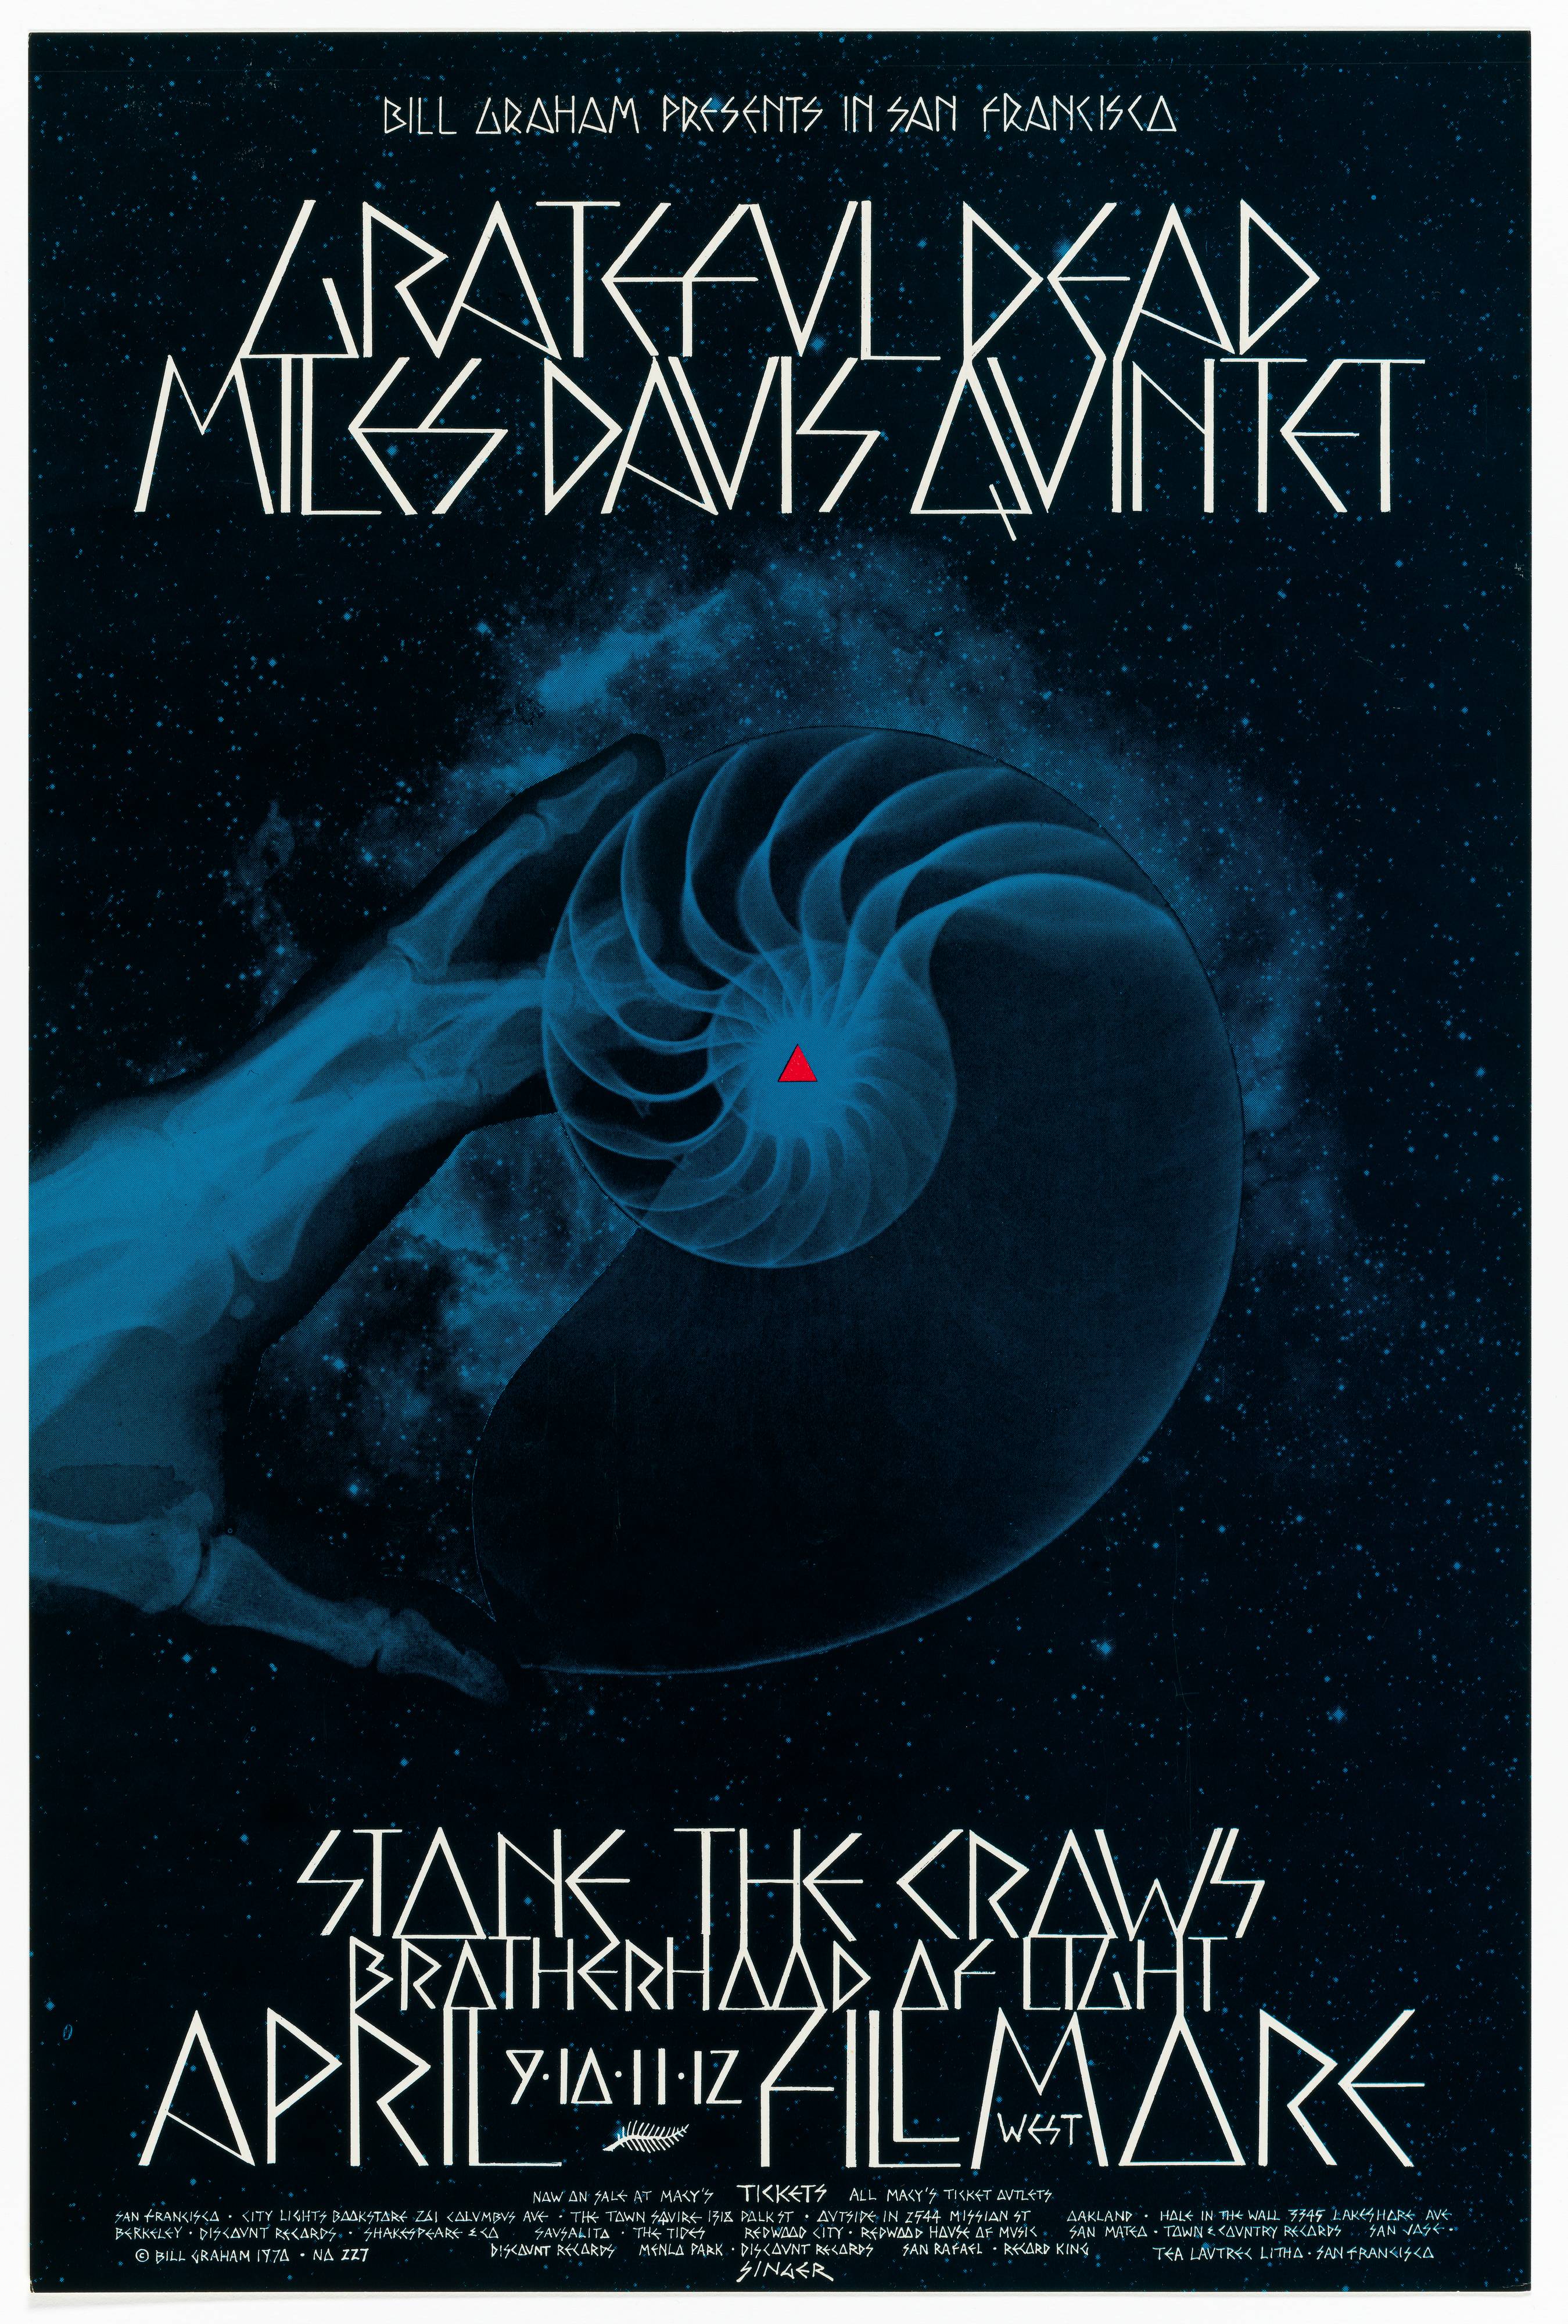 Grateful Dead, Miles Davis Quintet; Fillmore West, April 9-12, 1970